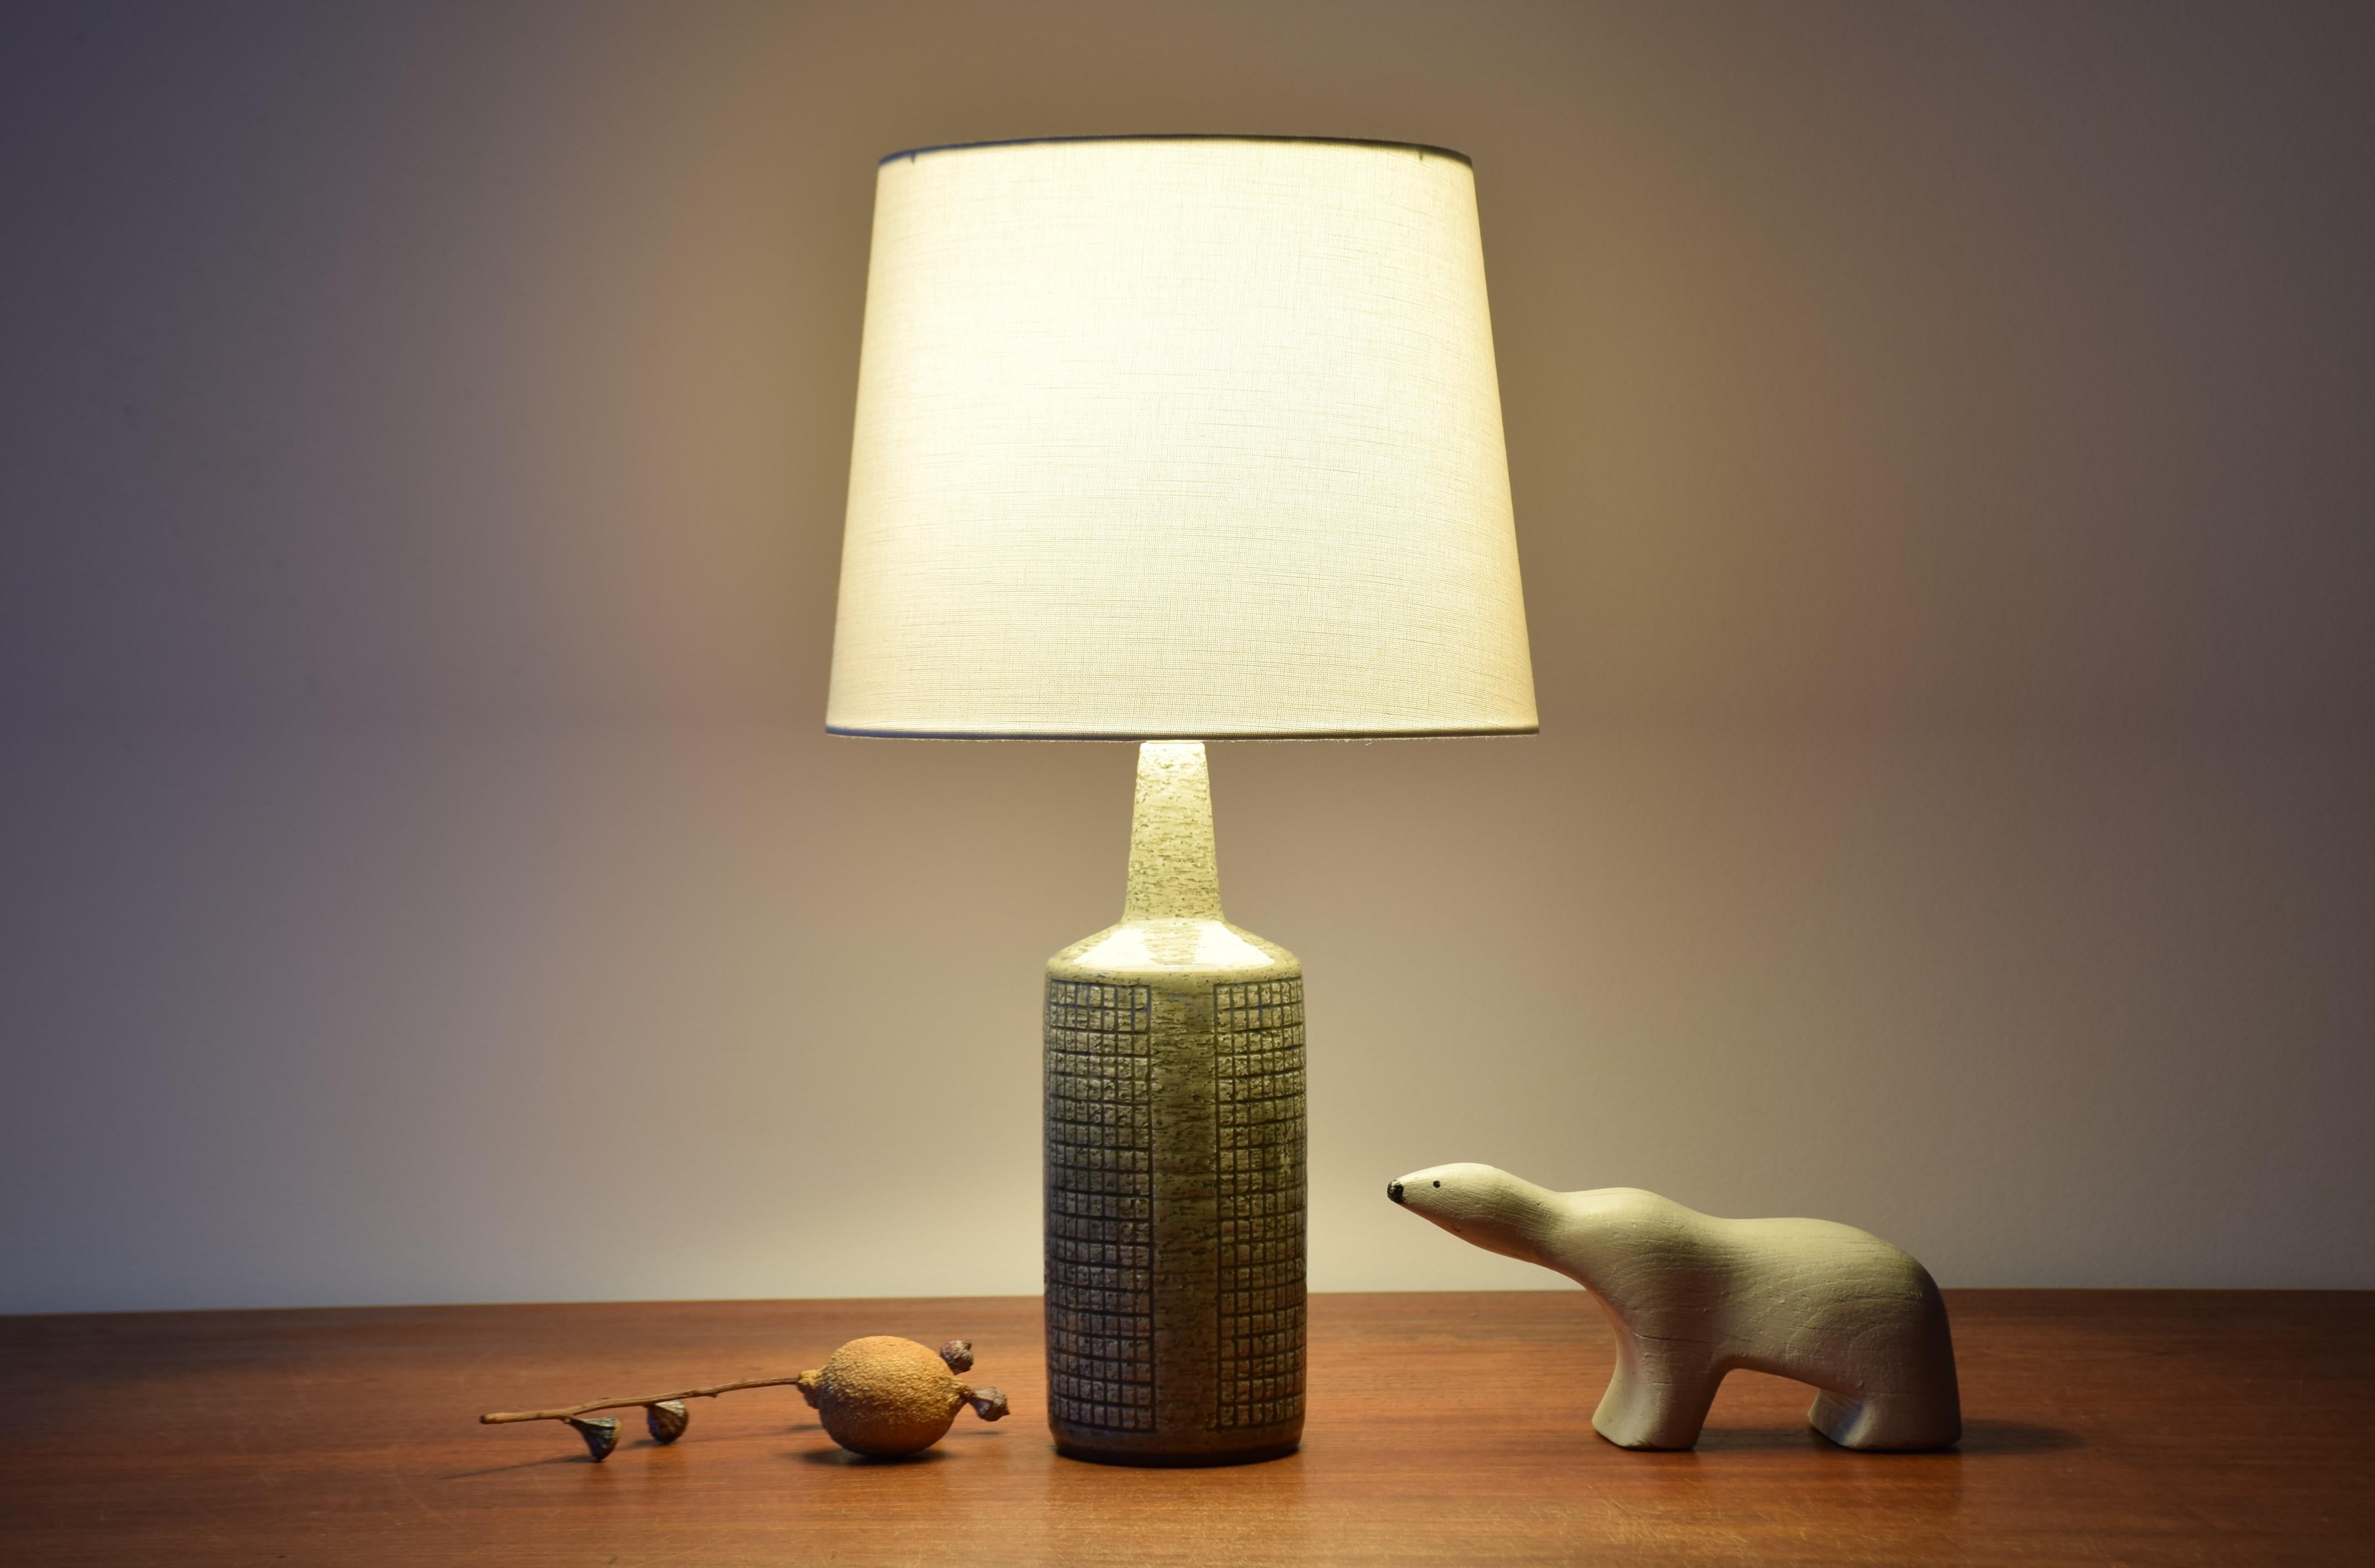 Lampe de table du milieu du siècle de Danish Palshus, abat-jour inclus.
La lampe a été conçue par Per Linnemann-Schmidt et fabriquée vers les années 1960.
Il est fabriqué avec de l'argile chamottée qui donne une surface rugueuse et vive. La